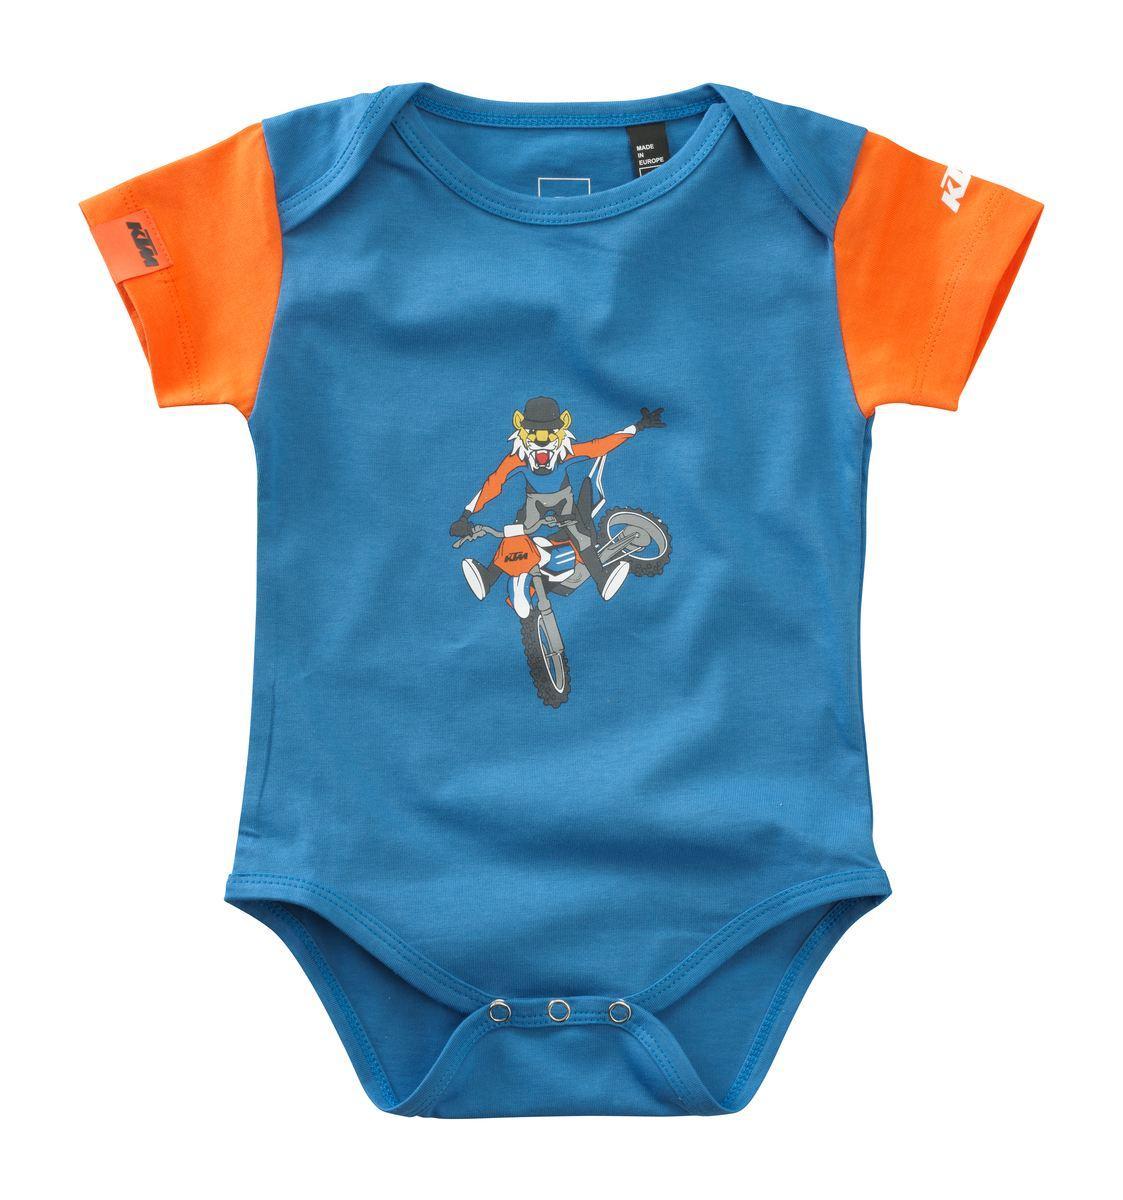 Selected image for KTM-MOTO Bodi za bebe 2/1 Radical plavi i narandžasti